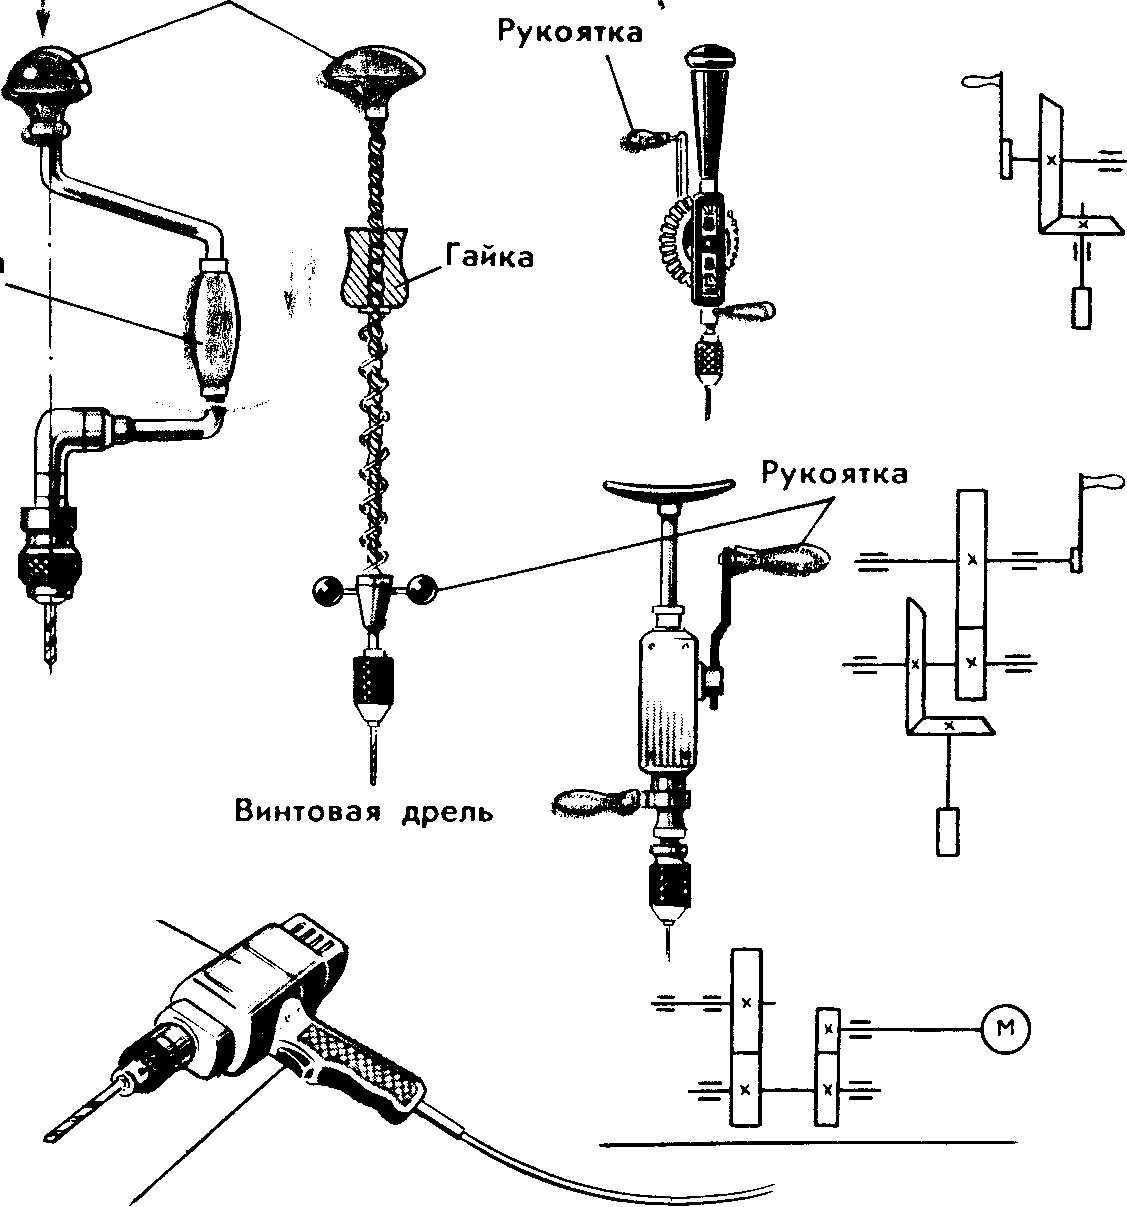 Обзор различных видов низкооборотистых дрелей и их применение.